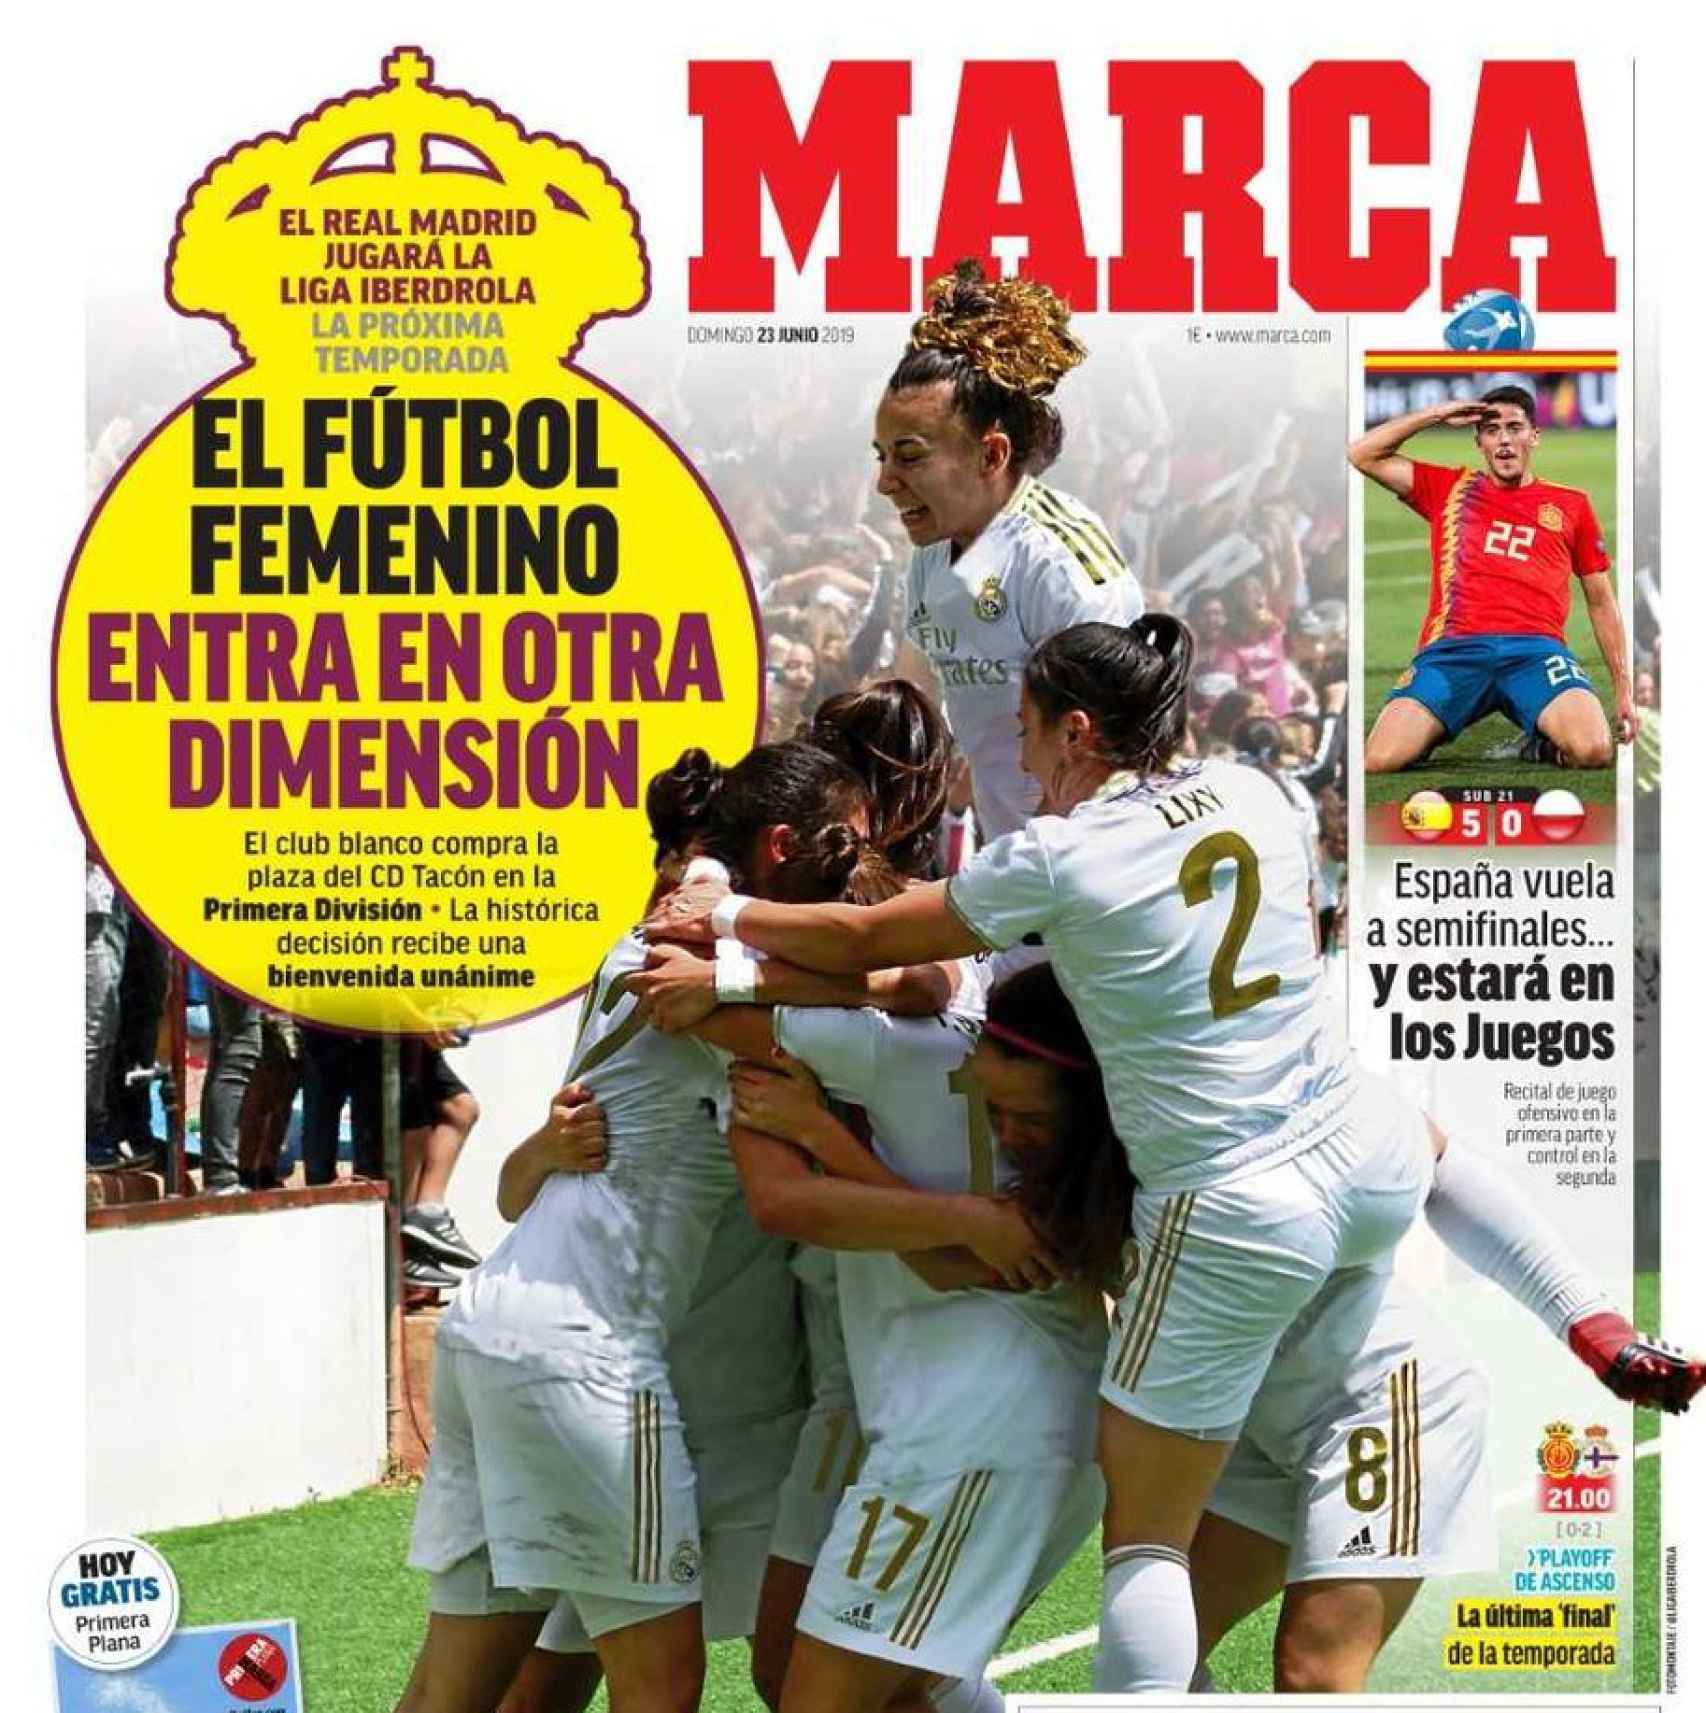 La portada del diario 'Marca' cuando el Real Madrid adquirió el CD Tacón